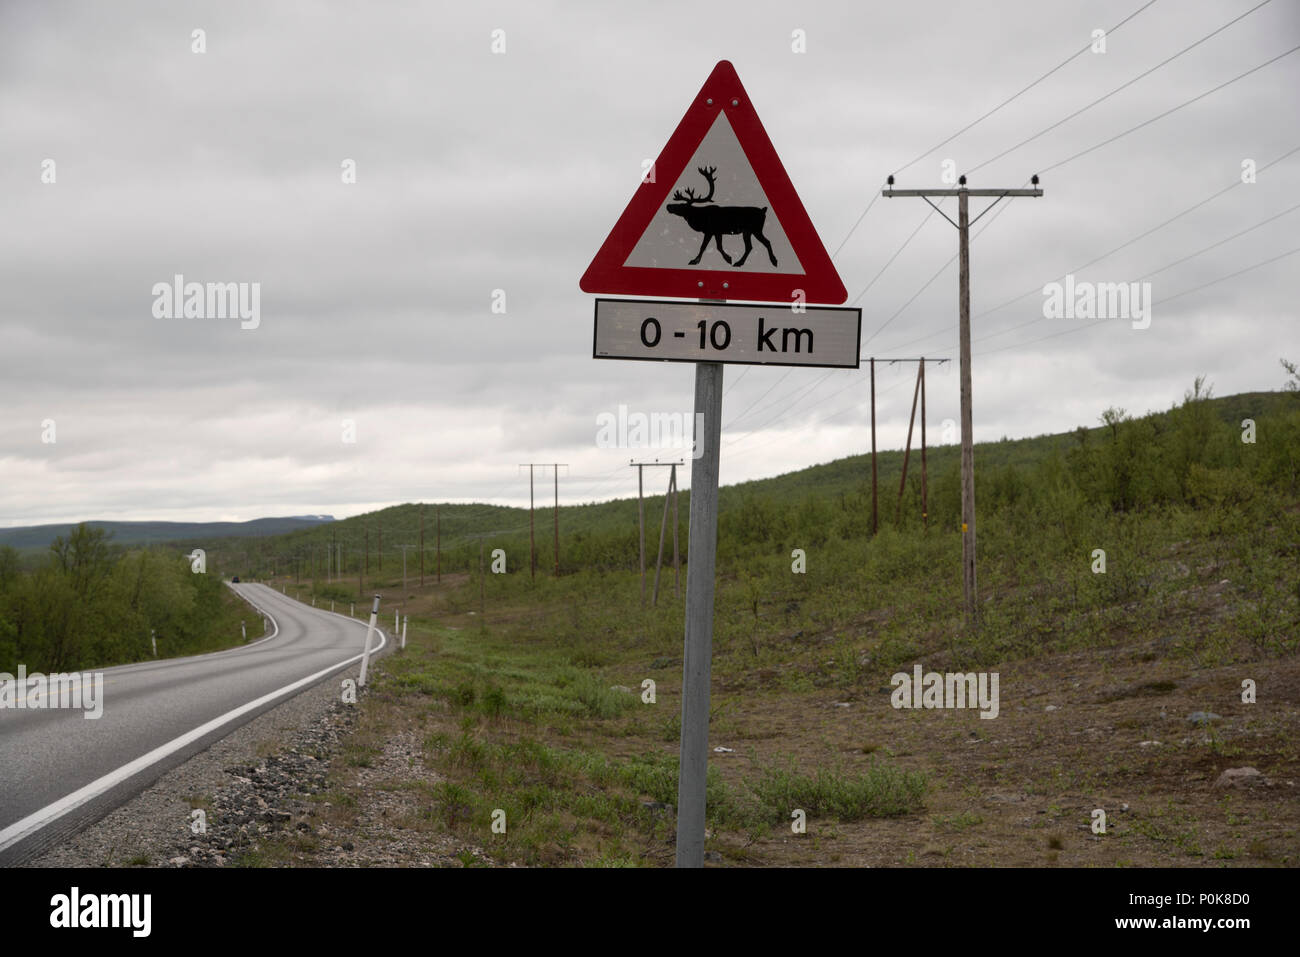 Rentiere sind manchmal in Verkehrsunfällen in der Provinz Finnmark Norwegen beteiligt. Daher spezifische Verkehrsschilder warnen: Gefahr einer Kollision. Stockfoto